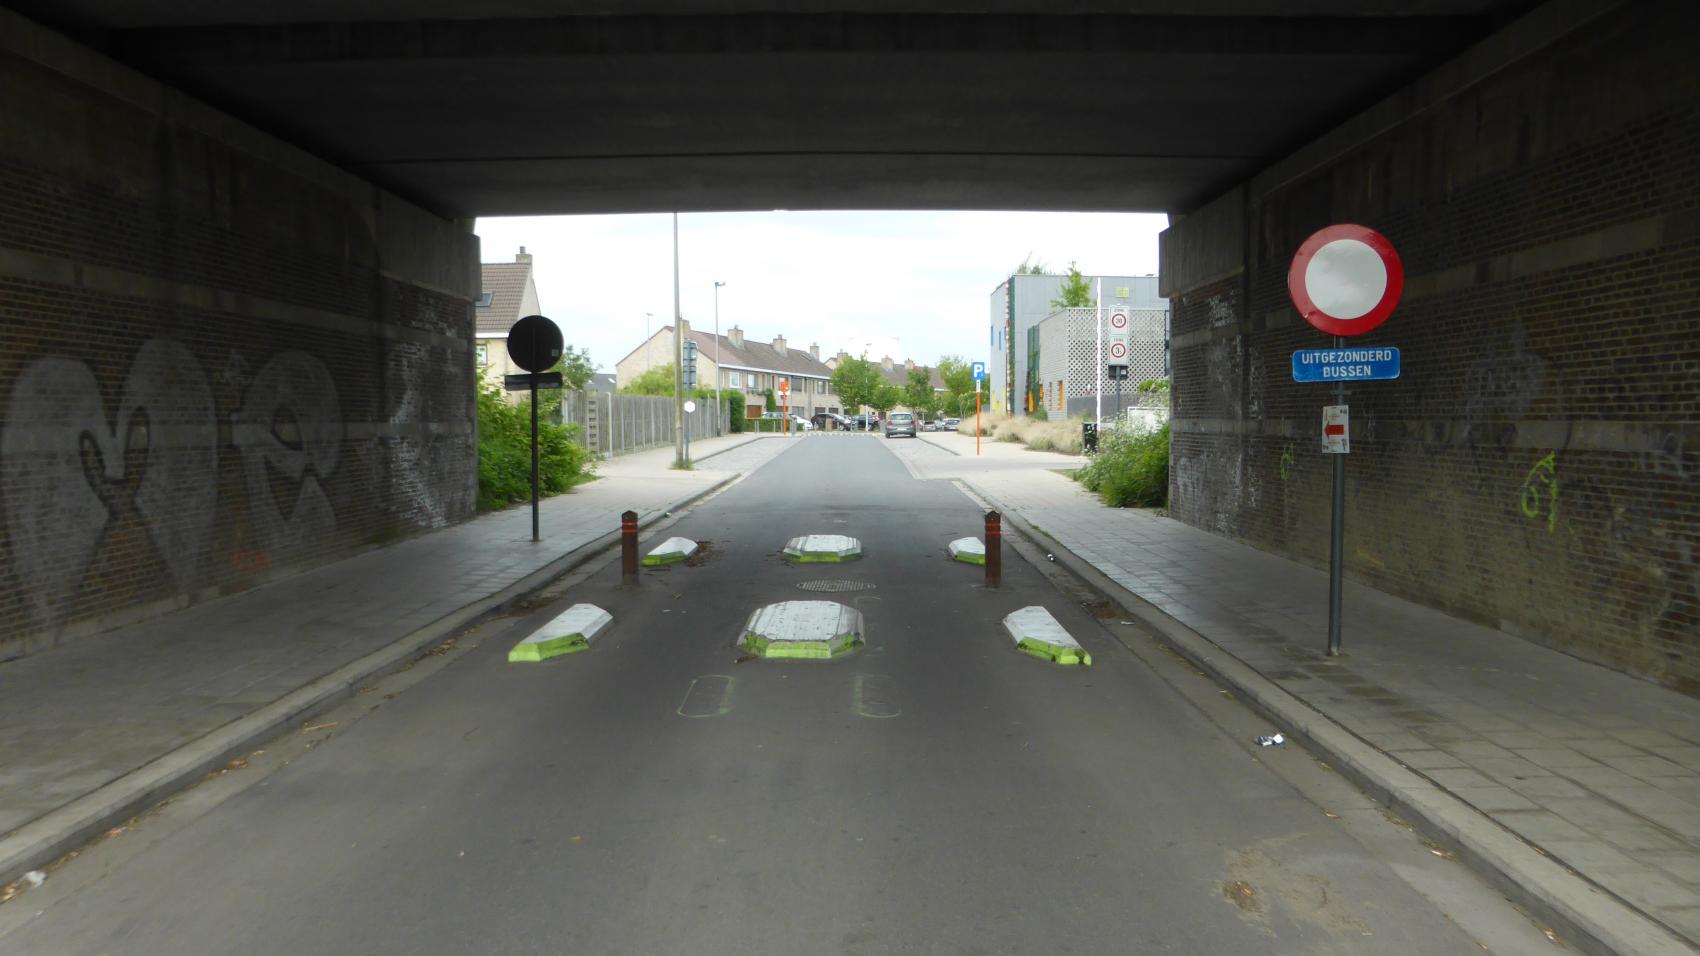 Similar solution used as “bus gate” in the tunnel on Nieuwe Rolleweg in Vilvoorde.